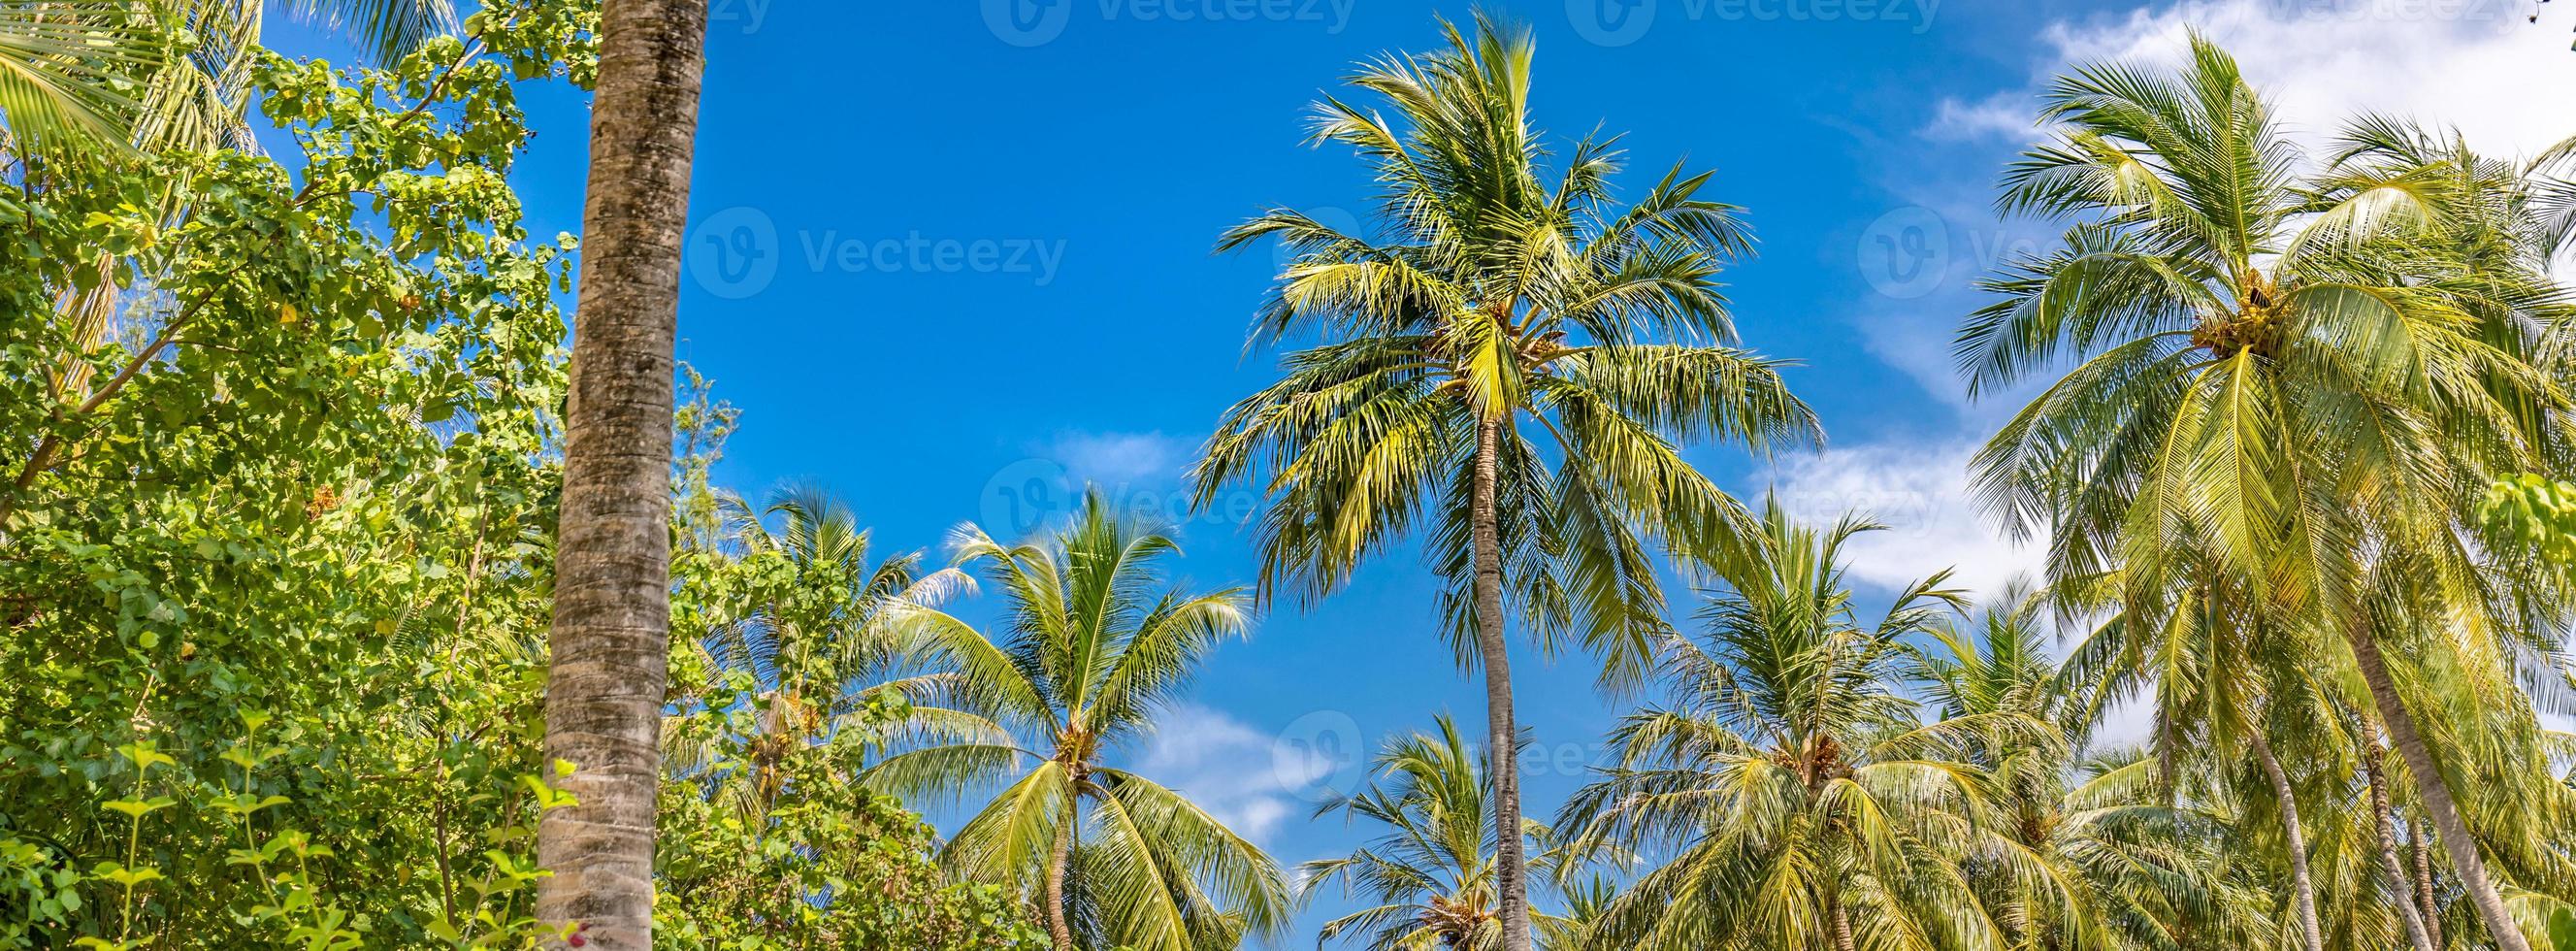 palmeiras contra o céu azul, palmeiras na costa tropical, estilizadas, coqueiros, árvores de verão. impulsionar o processo de cores. modelo de banner de bela natureza tropical foto